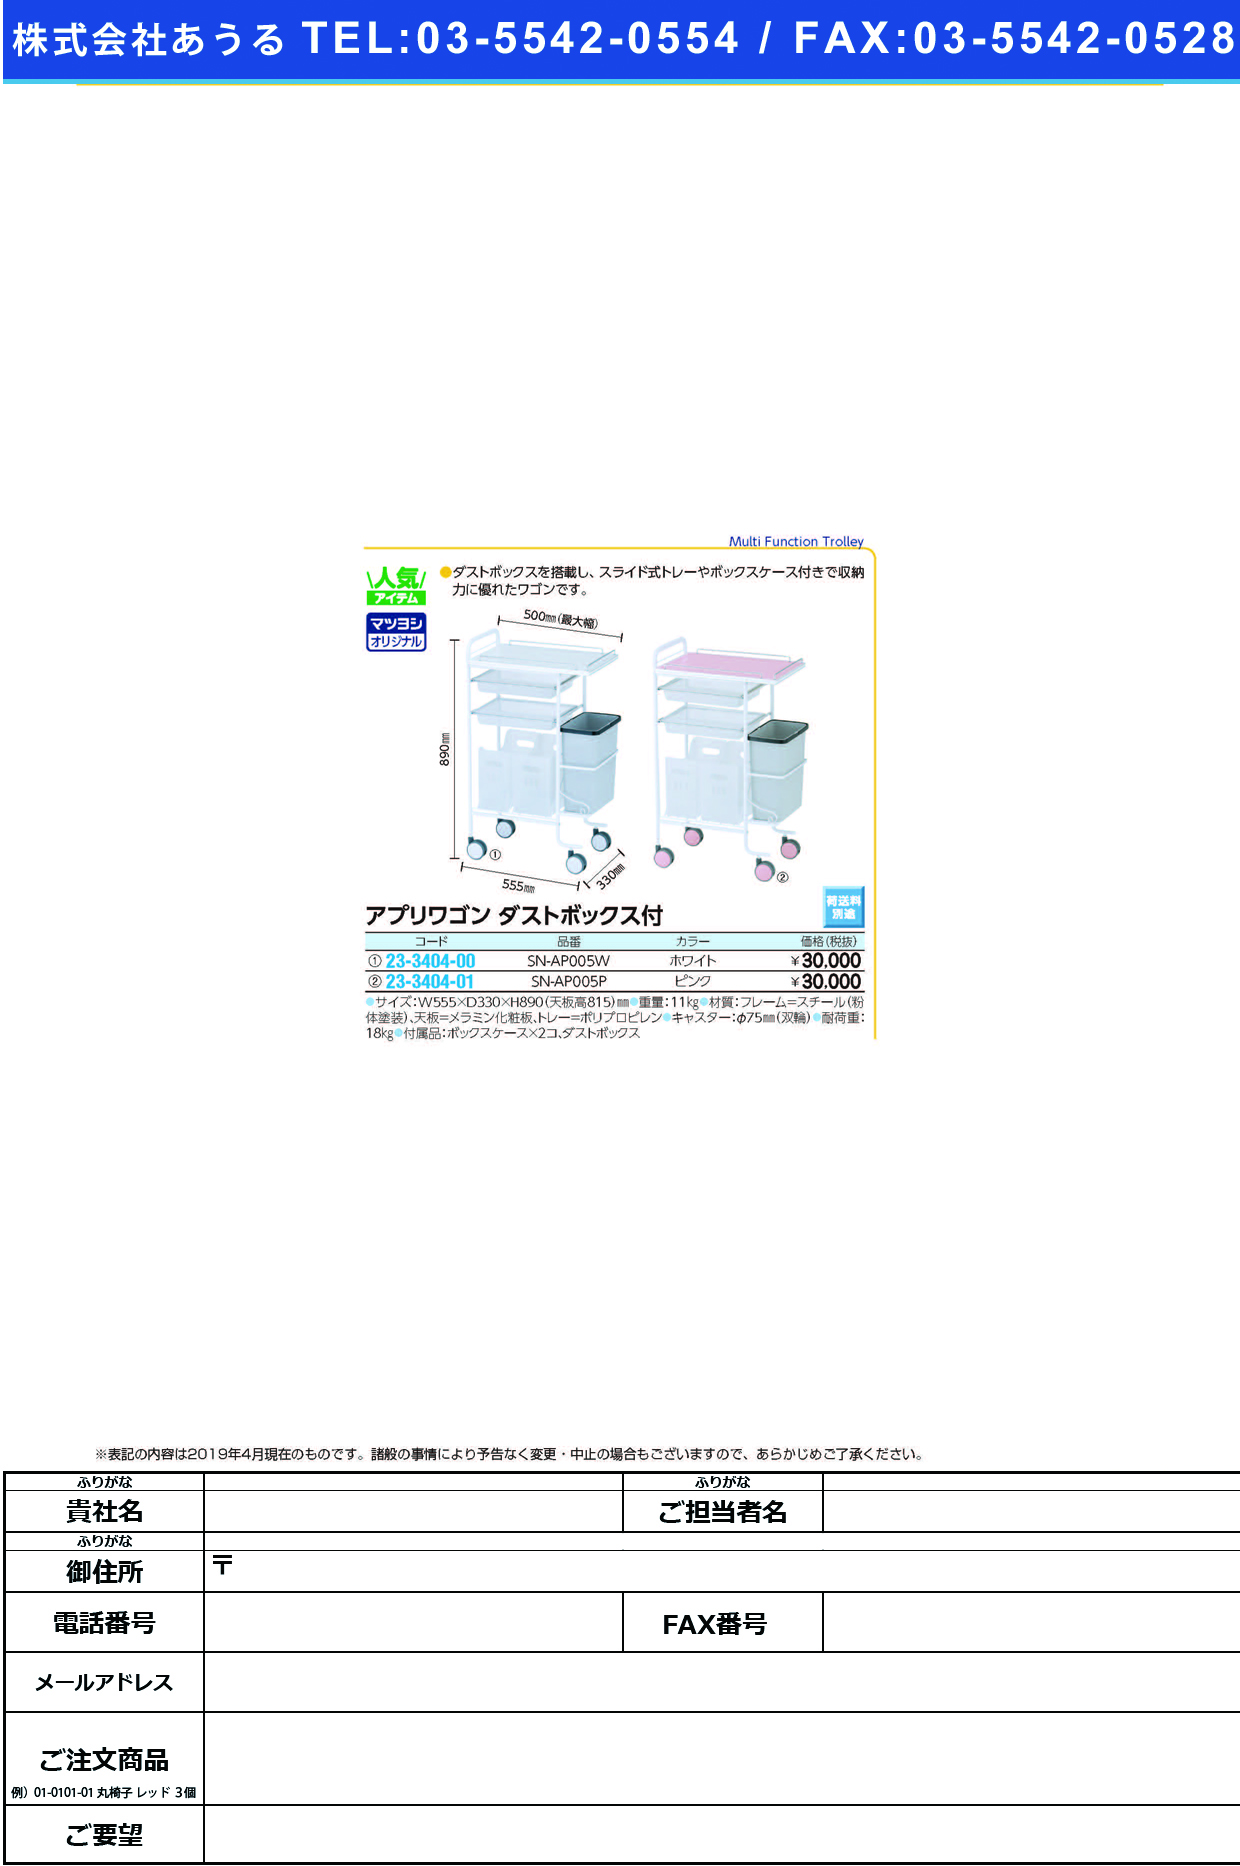 (23-3404-01)アプリワゴン（ダストボックス付） SN-AP005P(ﾋﾟﾝｸ) ｱﾌﾟﾘﾜｺﾞﾝﾀﾞｽﾄﾎﾞｯｸｽﾂｷ【1台単位】【2019年カタログ商品】